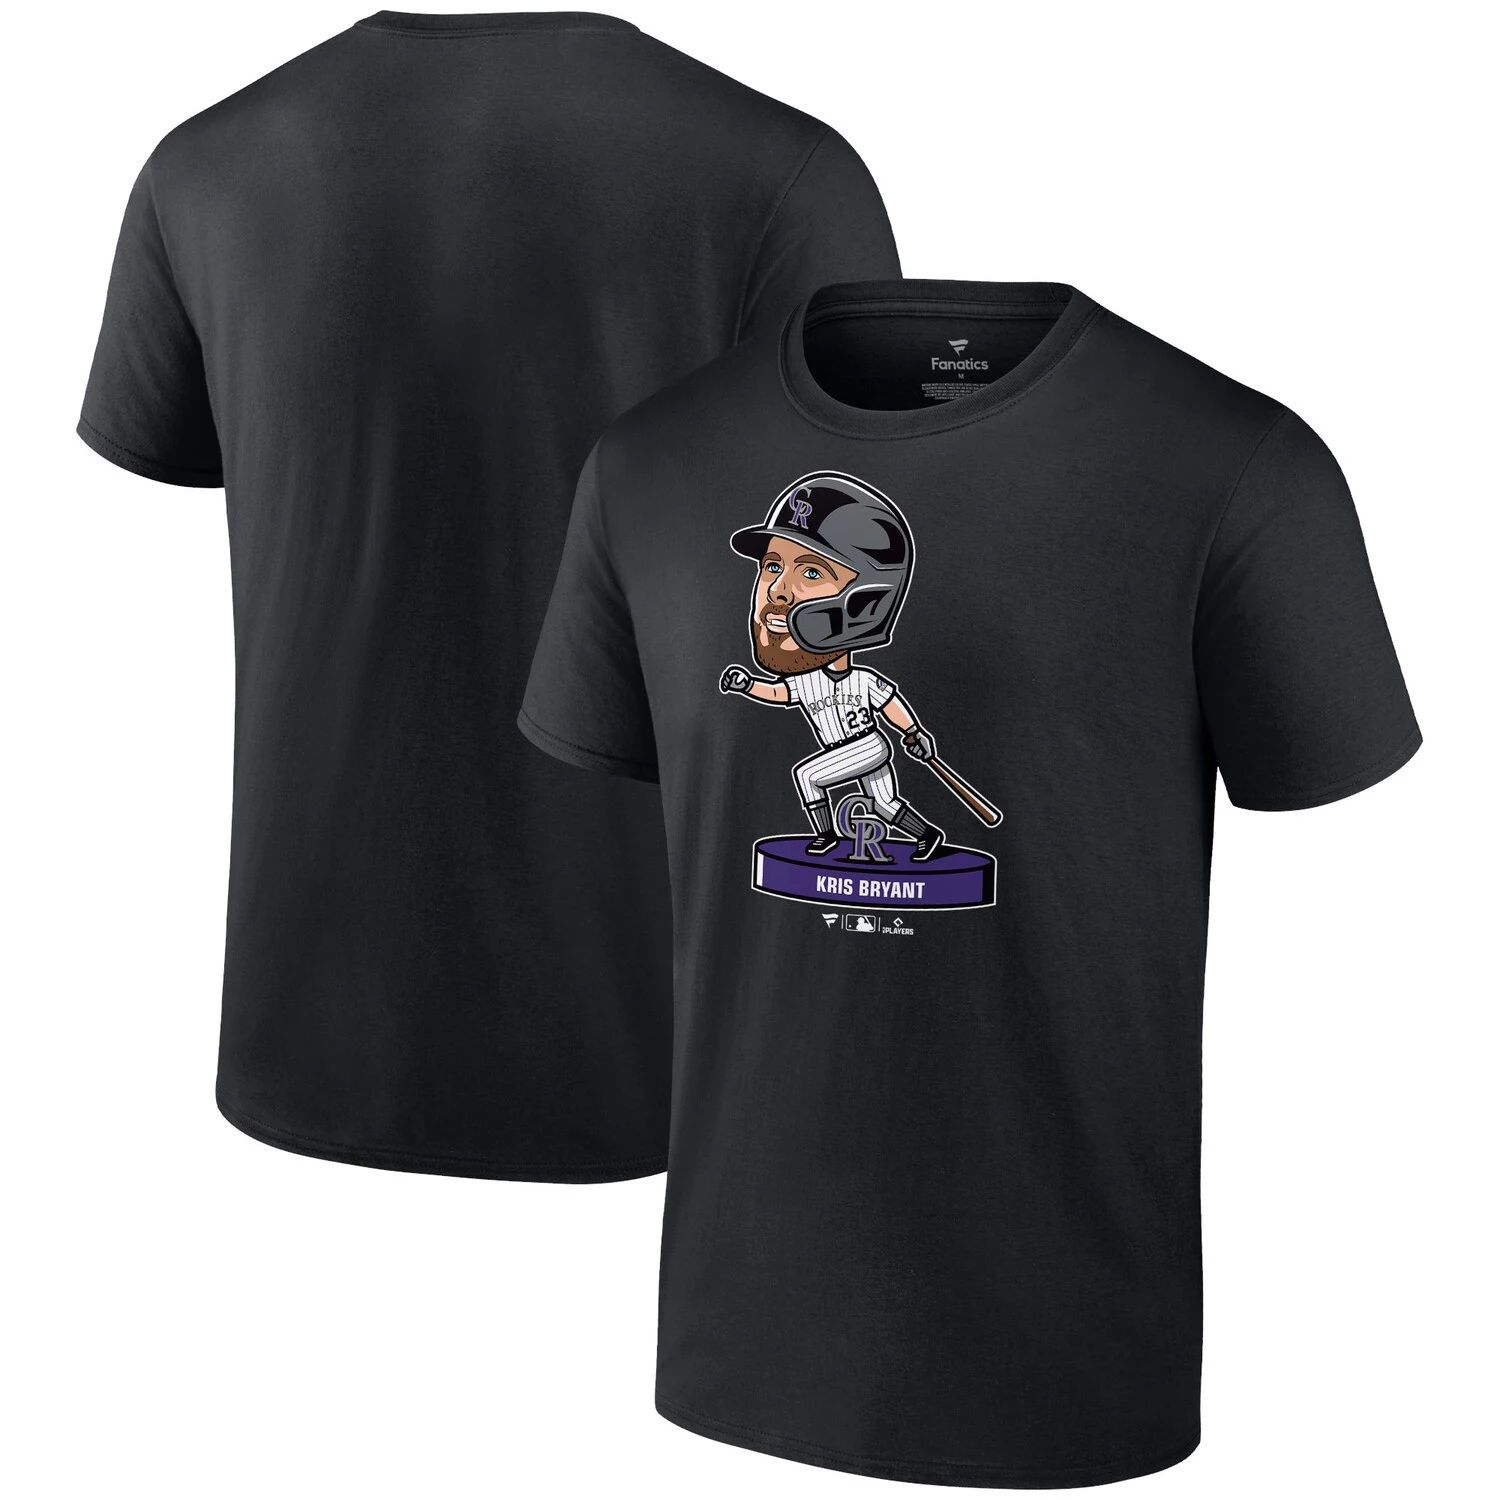 Мужская черная футболка Nike Kris Bryant Colorado Rockies Bobblehead Fanatics мужская футболка kris bryant purple colorado rockies с именем и номером игрока nike фиолетовый